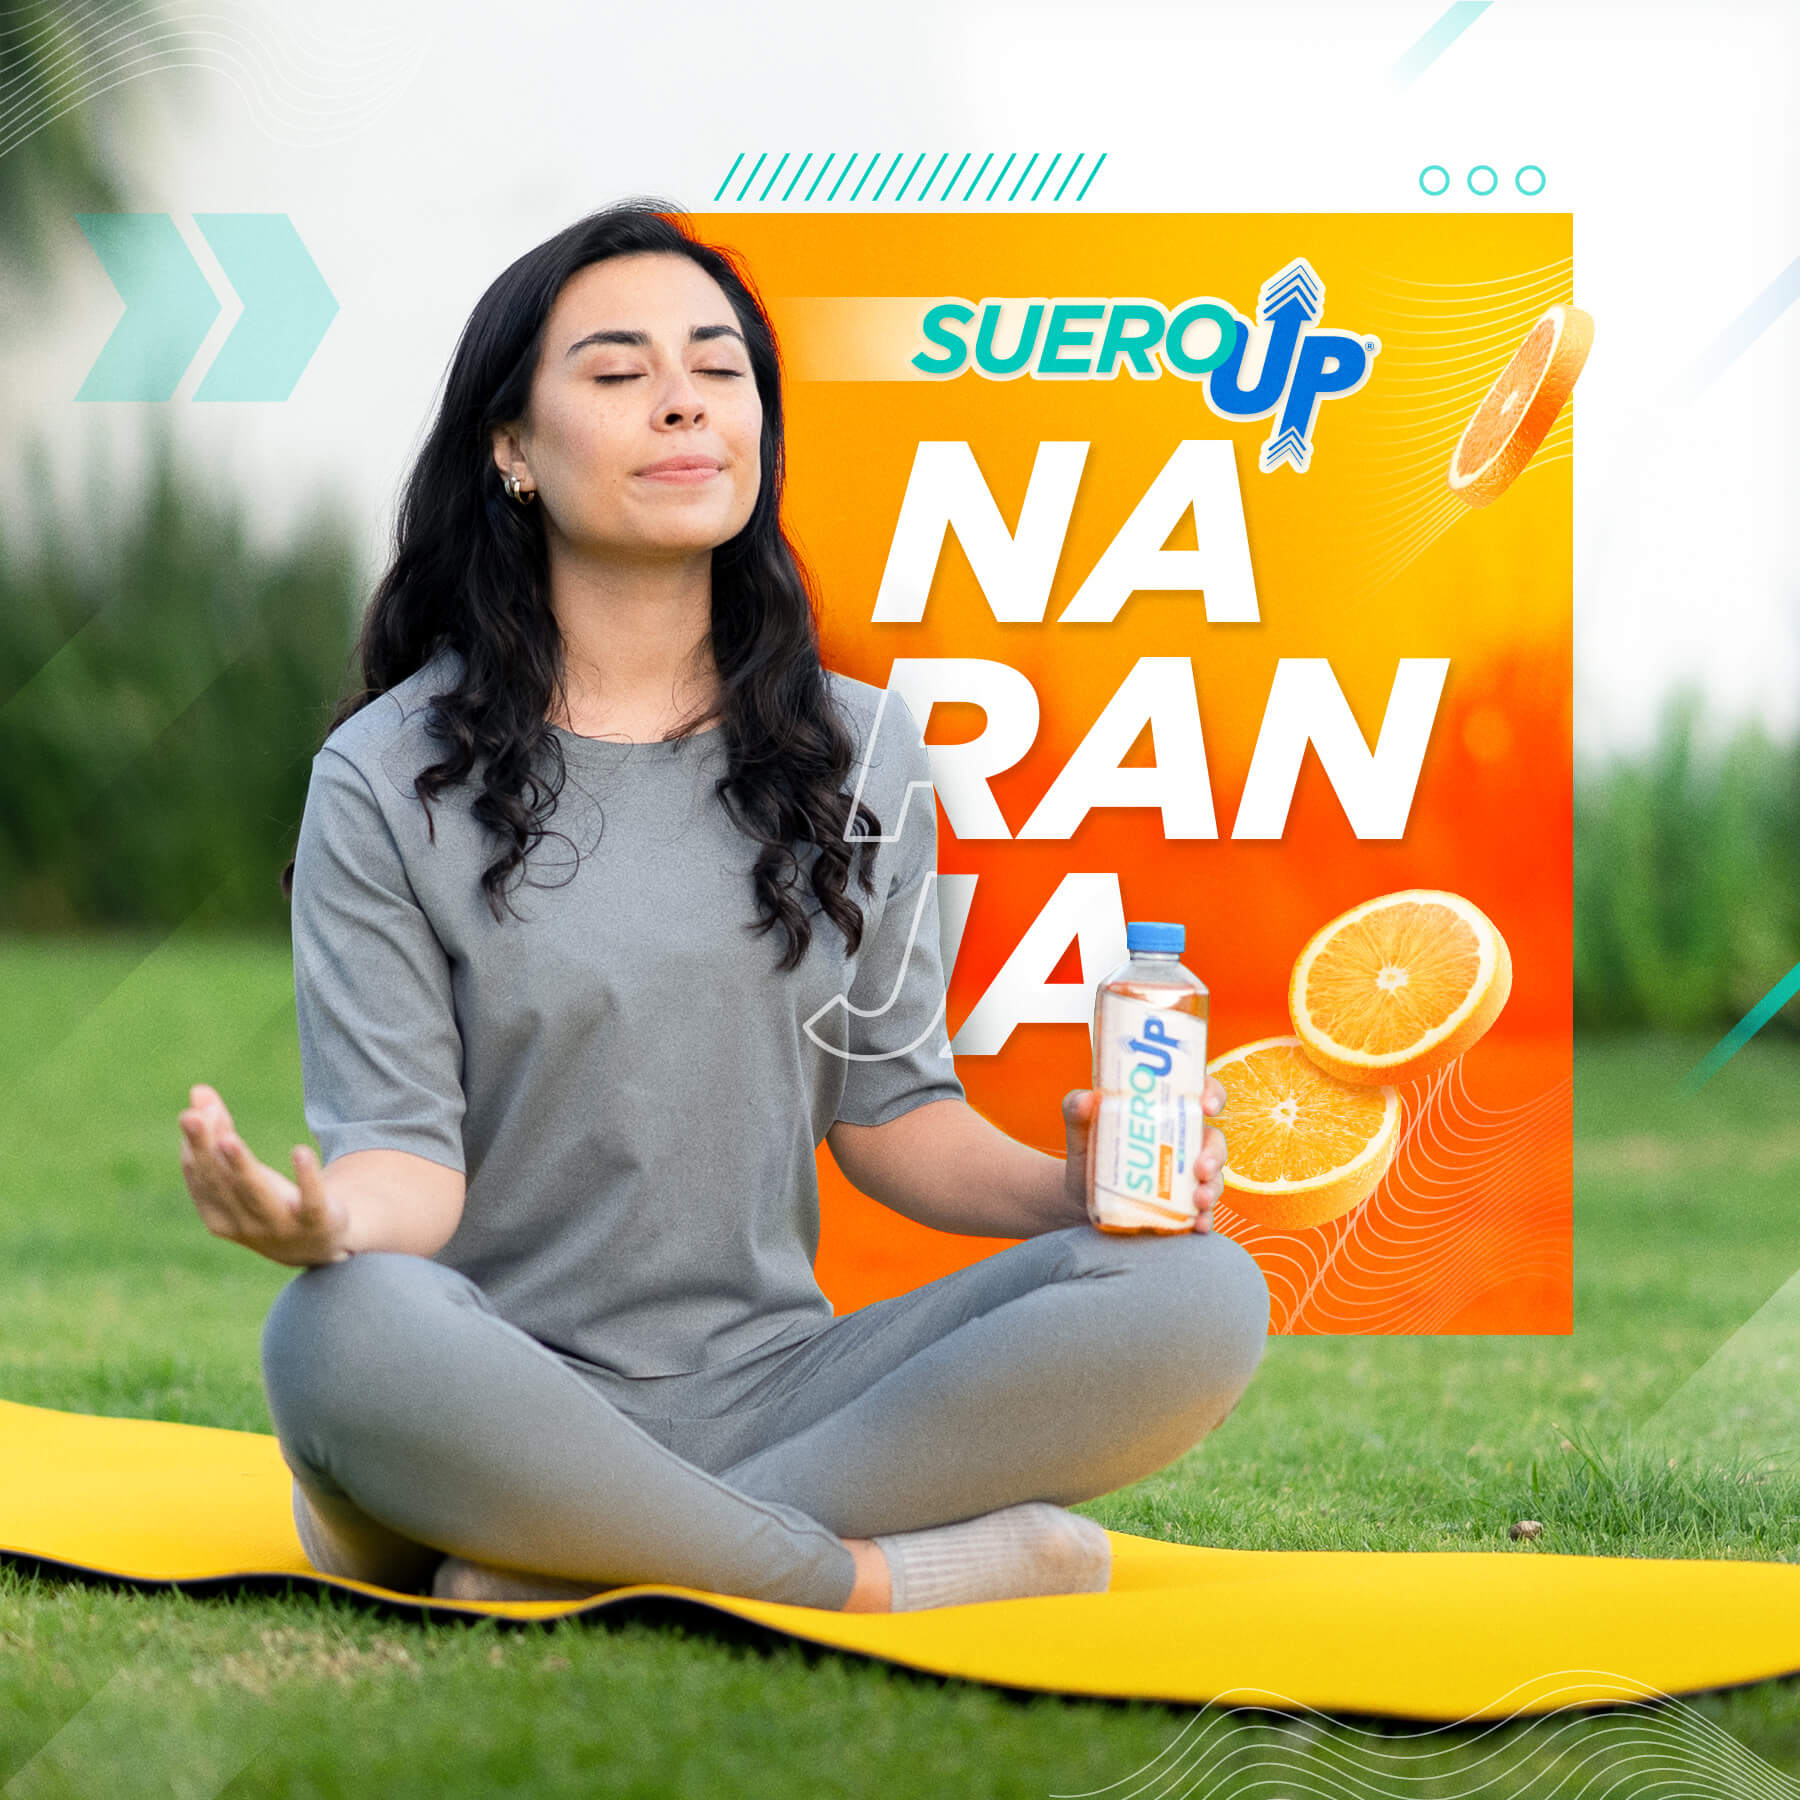 Logra todos tus objetivos con #SueroUp.
¡Te mantendrás hidratad@ todo el día!